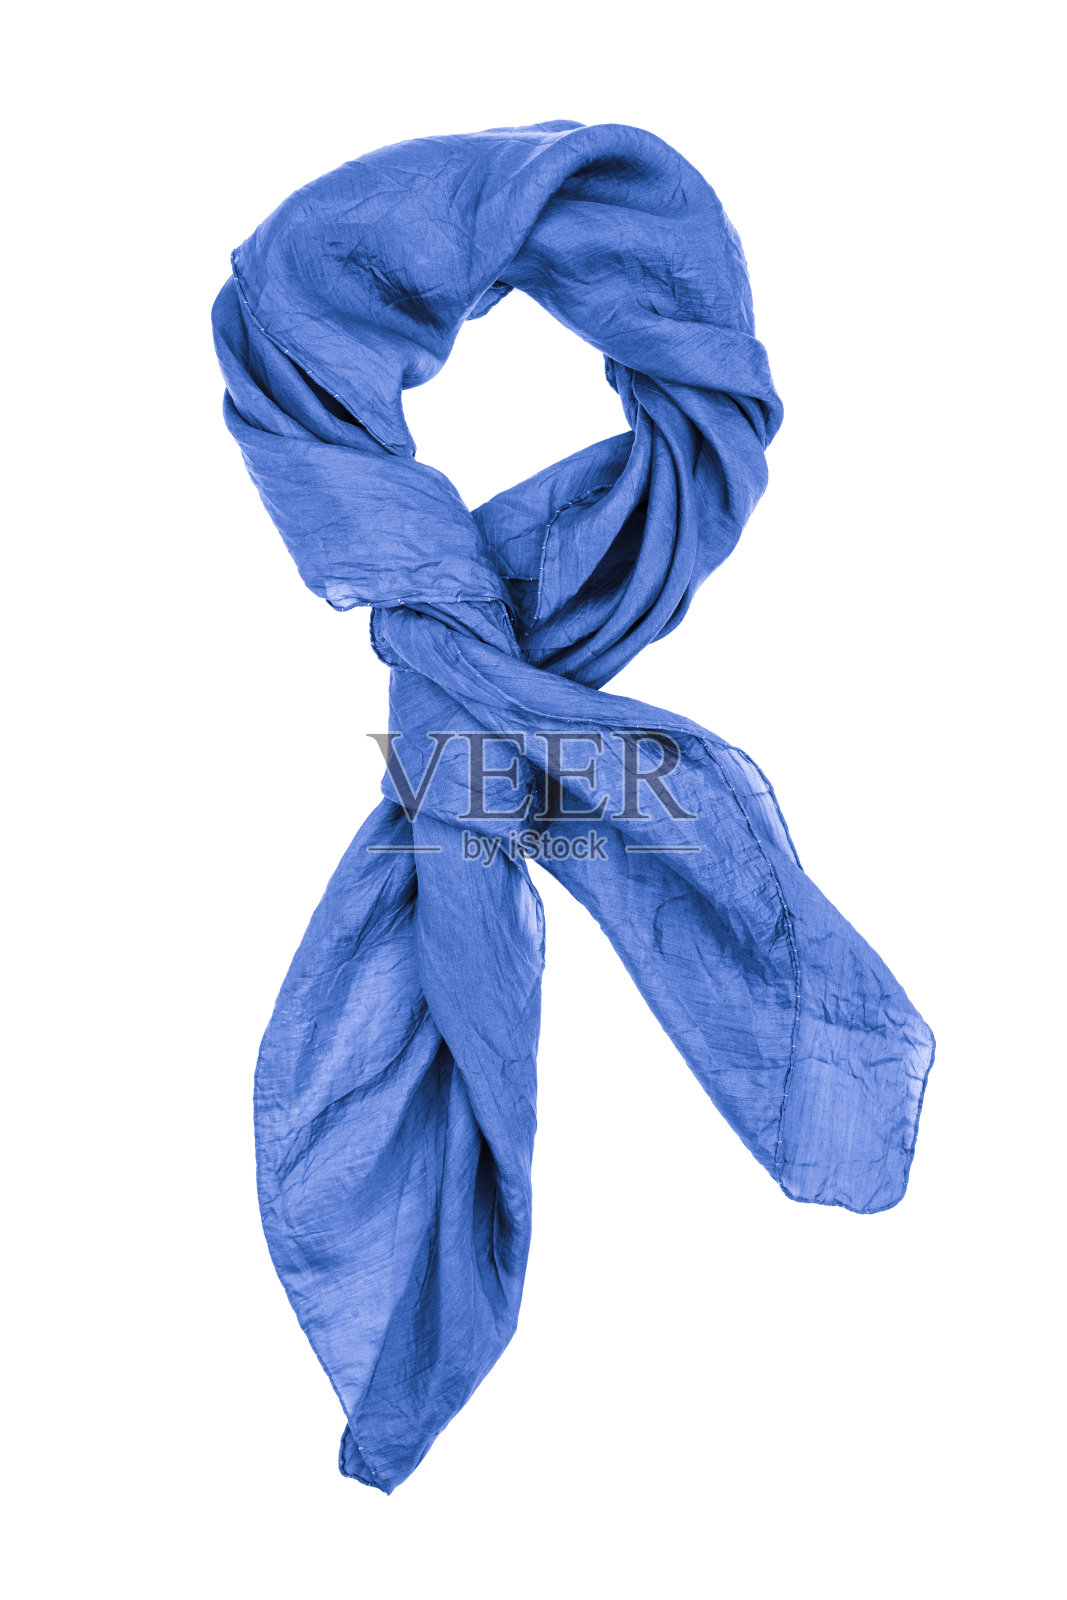 丝绸围巾。蓝色丝巾孤立在白色背景上照片摄影图片